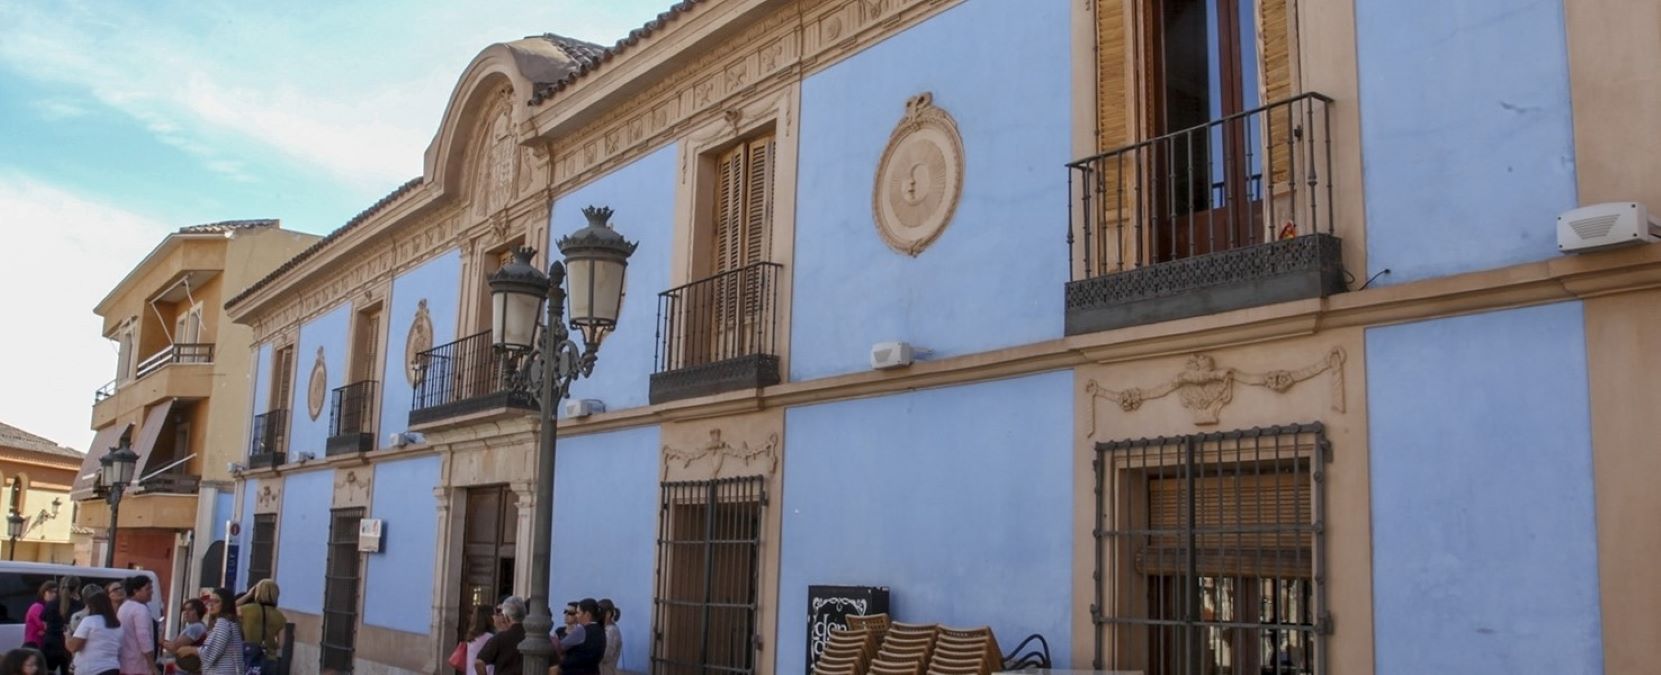 Cultura sobre ruedas: conocer el patrimonio de la provincia de Ciudad Real en autocaravana